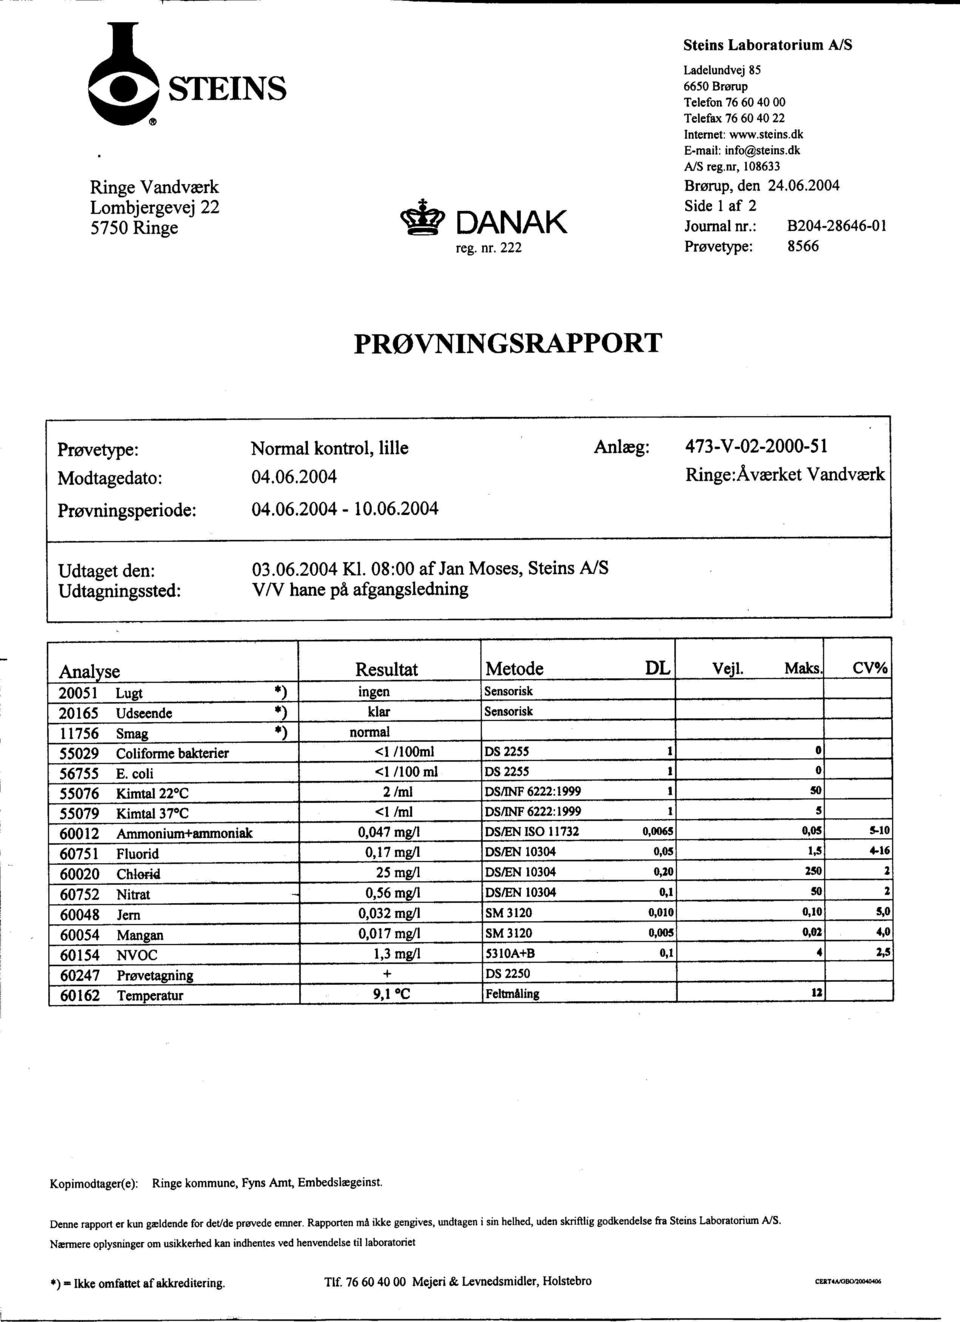 06.2004 Ringe:Aværket Vandværk Prøvningsperiode: 04.06.2004-10.06.2004 Udtaget den: Udtagningssted: 03.06.2004 Kl.